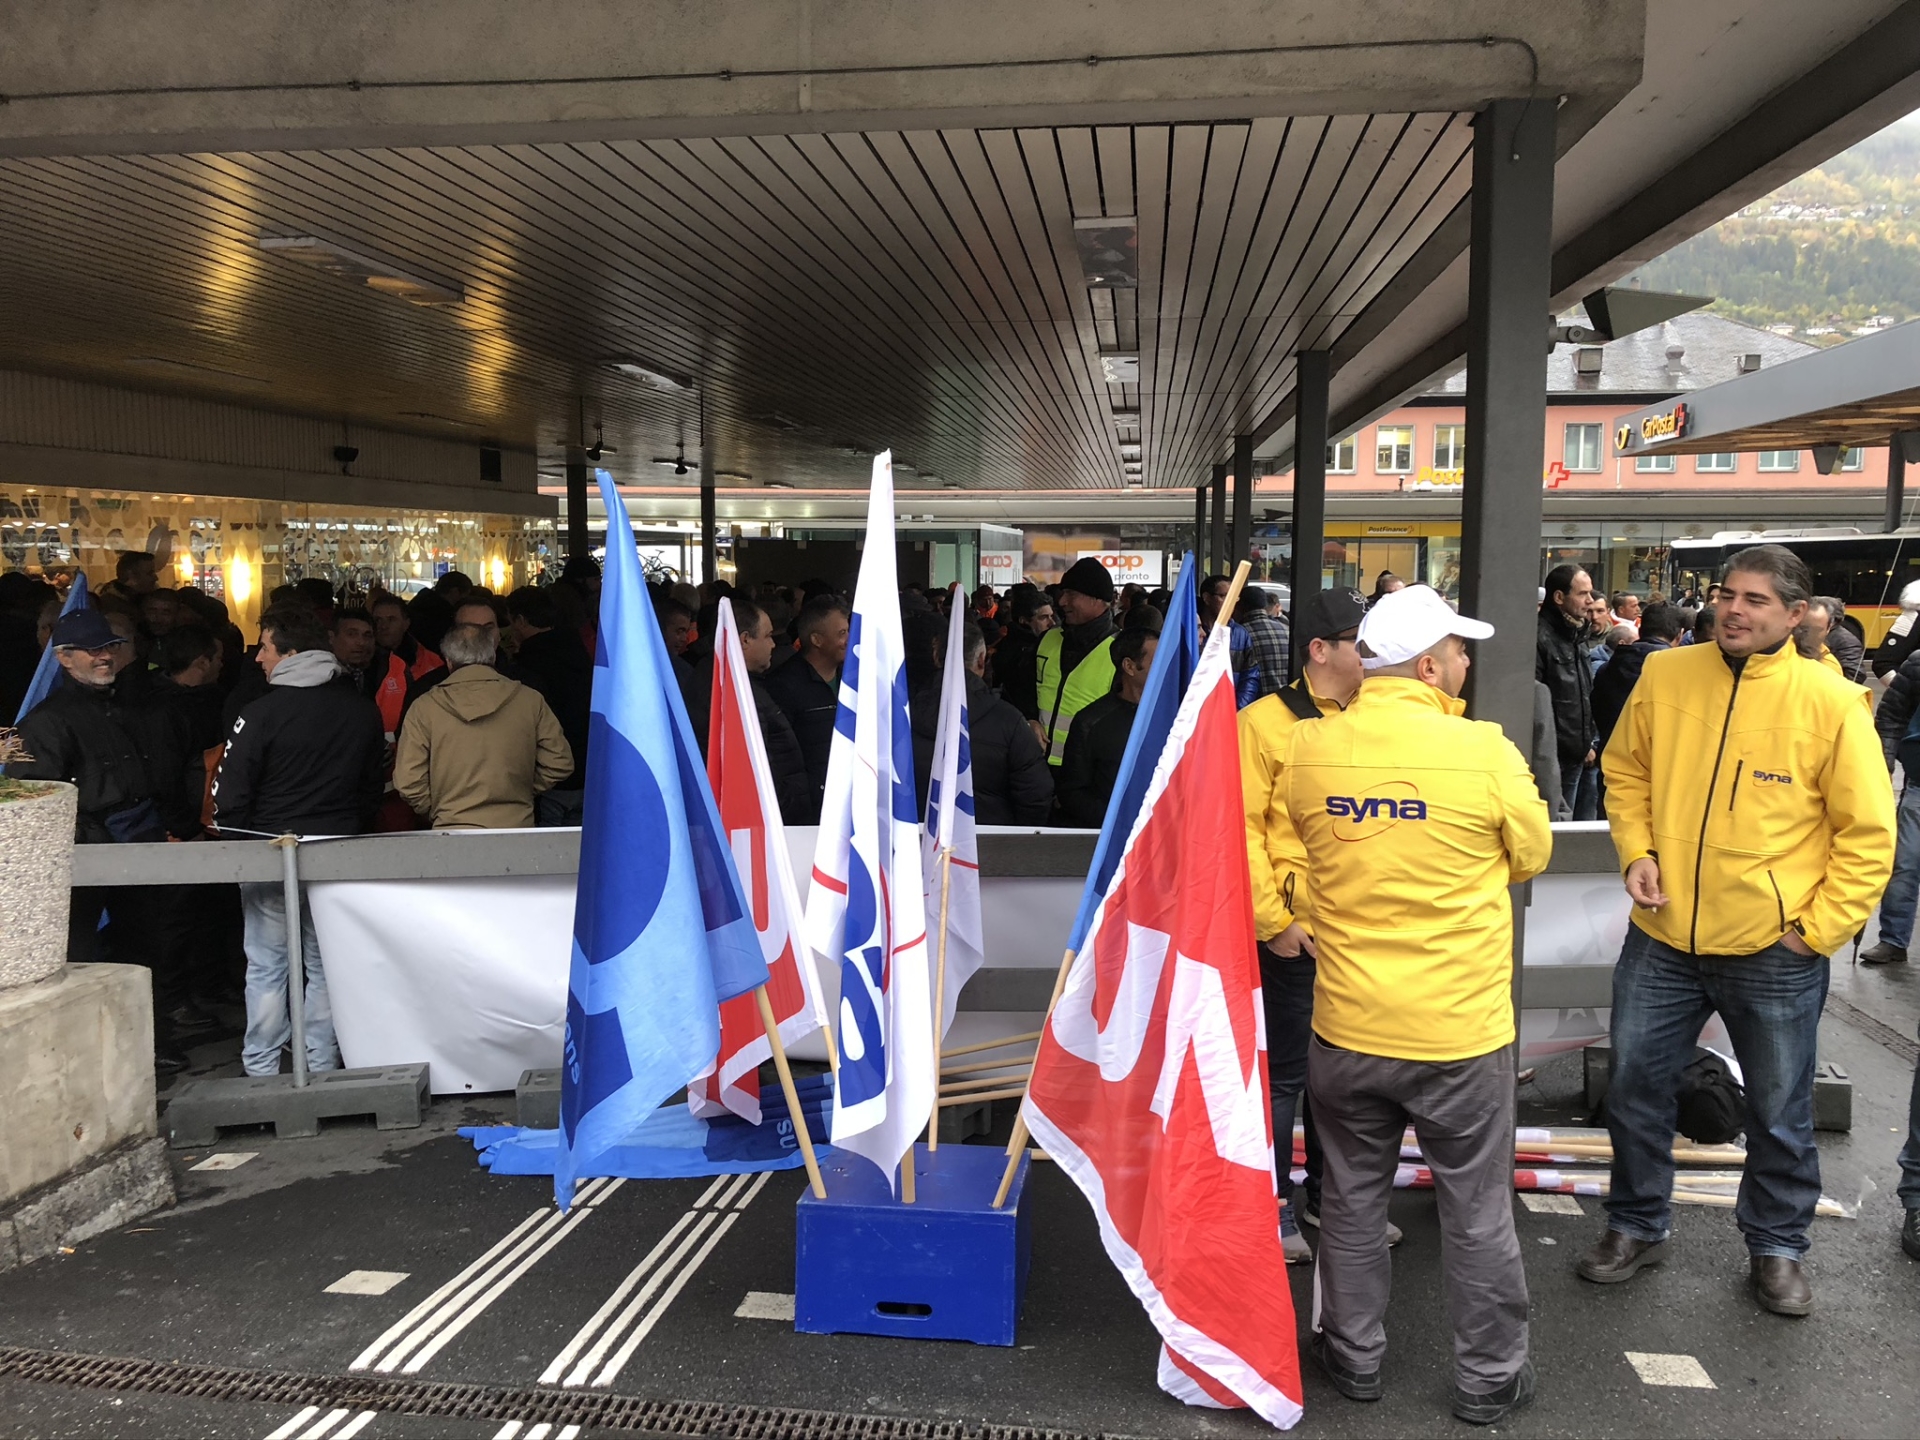 La mobilisation syndicale à la fin de l'automne est régulière (ici la manifestation à Sion du 30 octobre 2018).